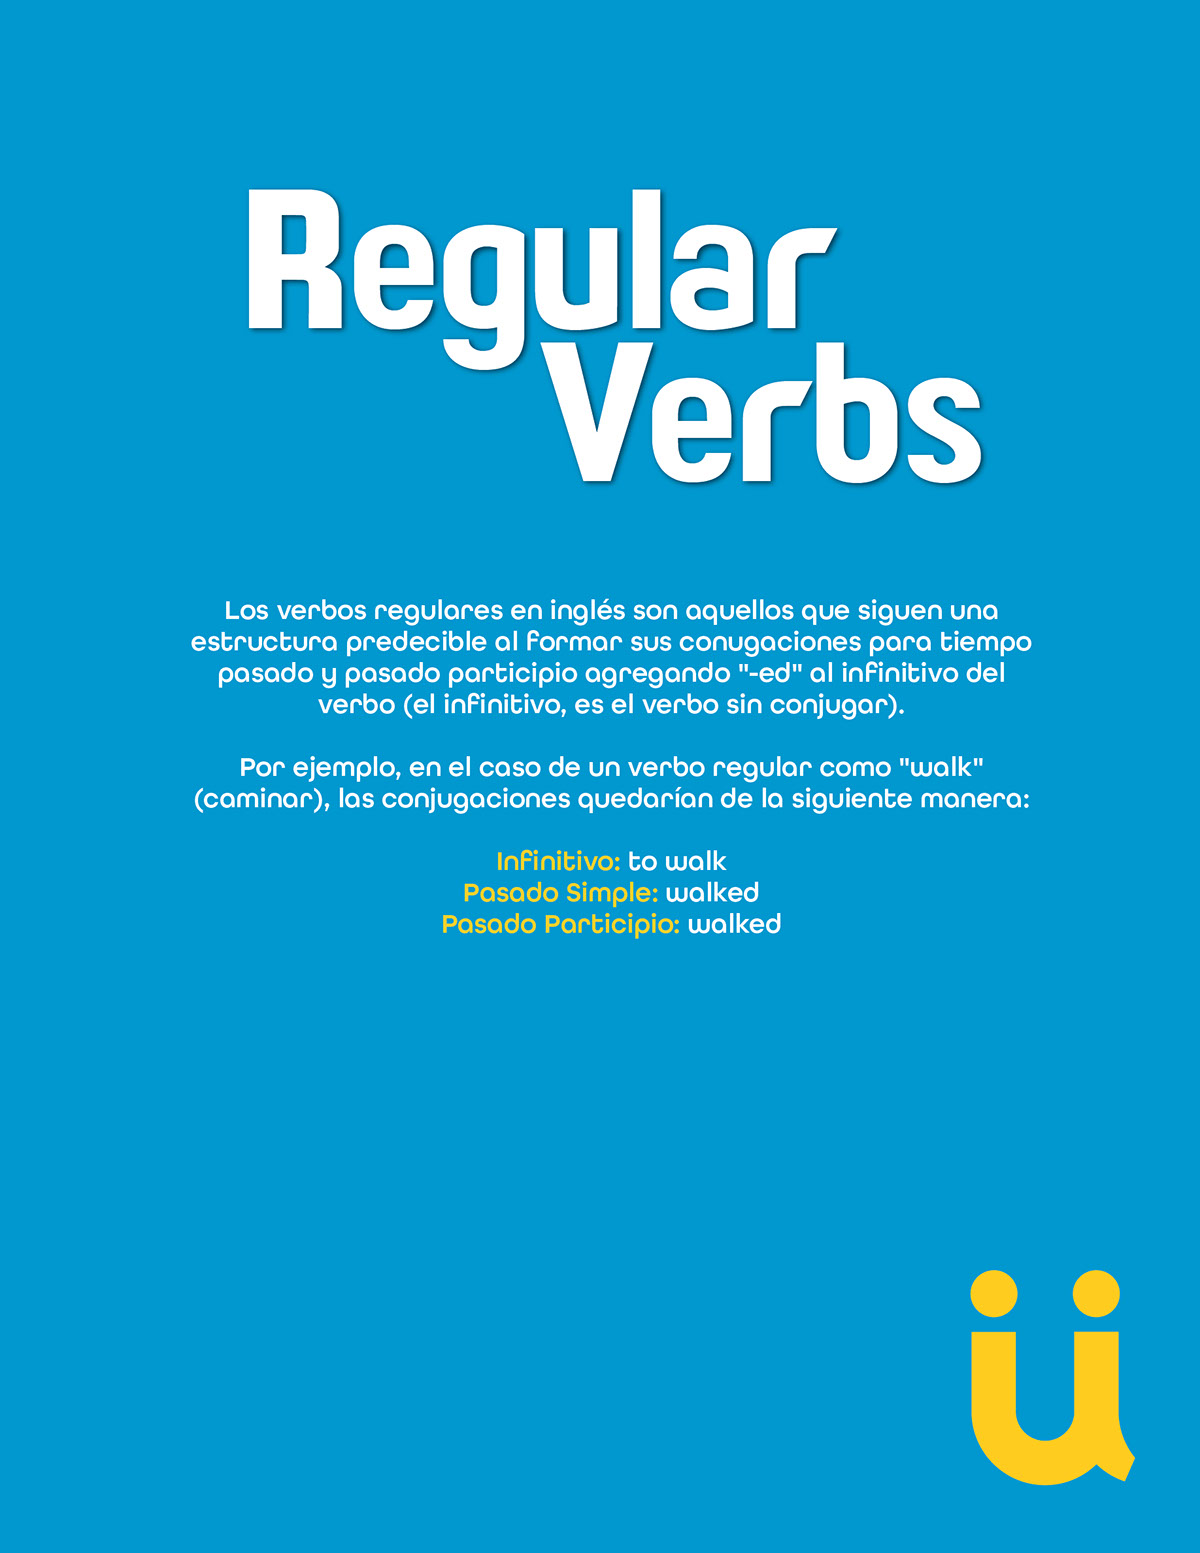 Regular verbs rendition image